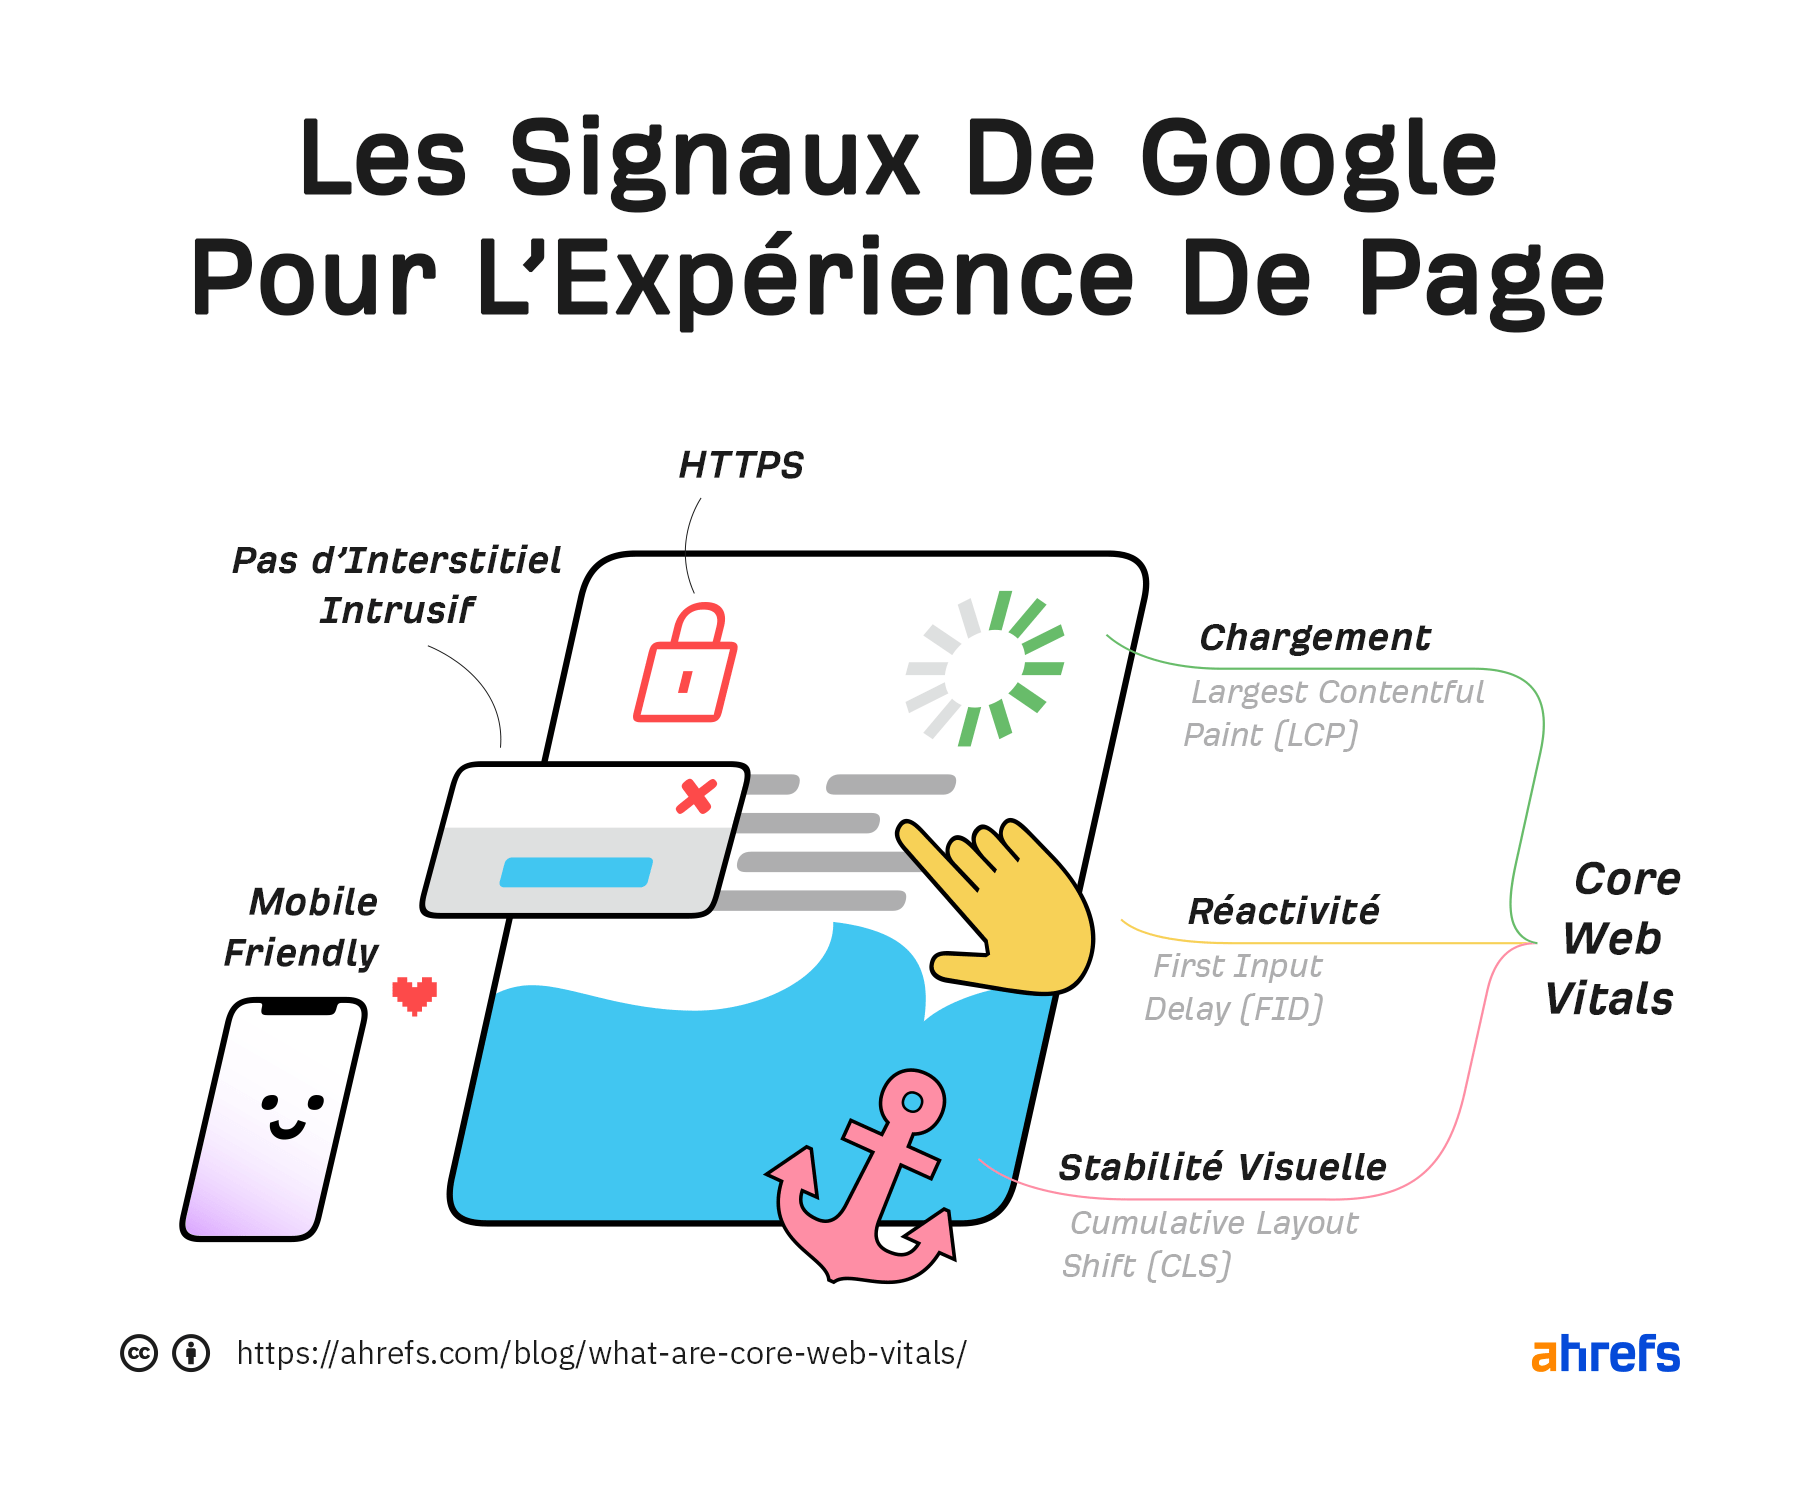  Les signaux de Page Experience de Google incluent le https, l’absence d’interstitiel intrusif, le responsive et les Core Web Vitals.